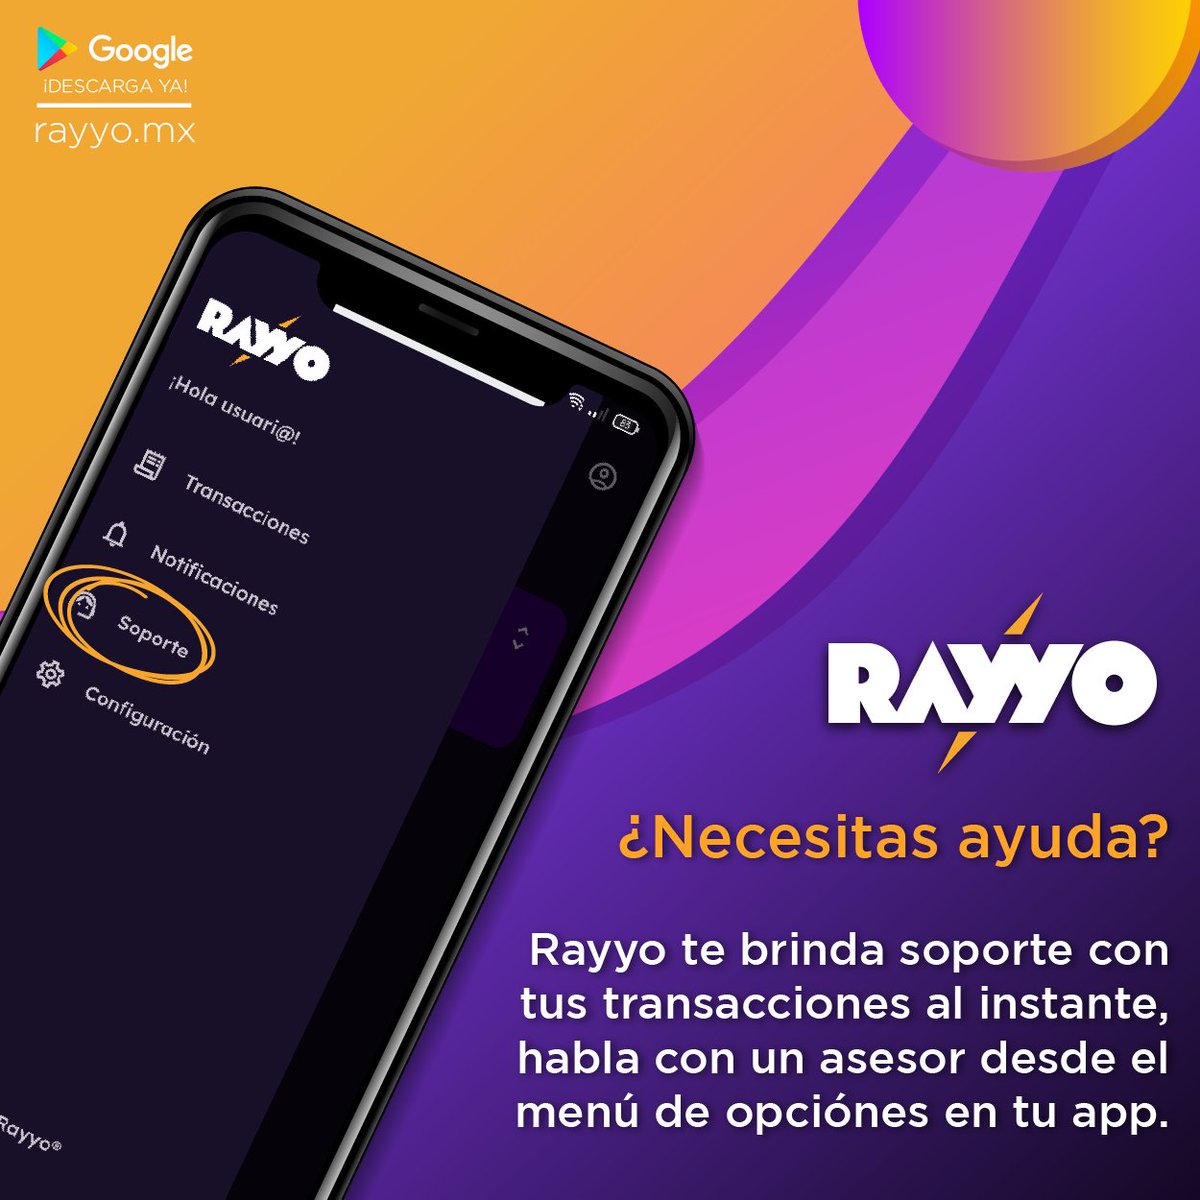 Rayyo te ofrece una seccón especializada en atención al cliente, contáctanos para brindarte apoyo con tus transacciones, dudas con rayyo app o para darnos tus sugerencias y comentarios.

#soporte #atención #clientes #app #rayyo #androidapp #android #ayuda #comentariosysugerencias